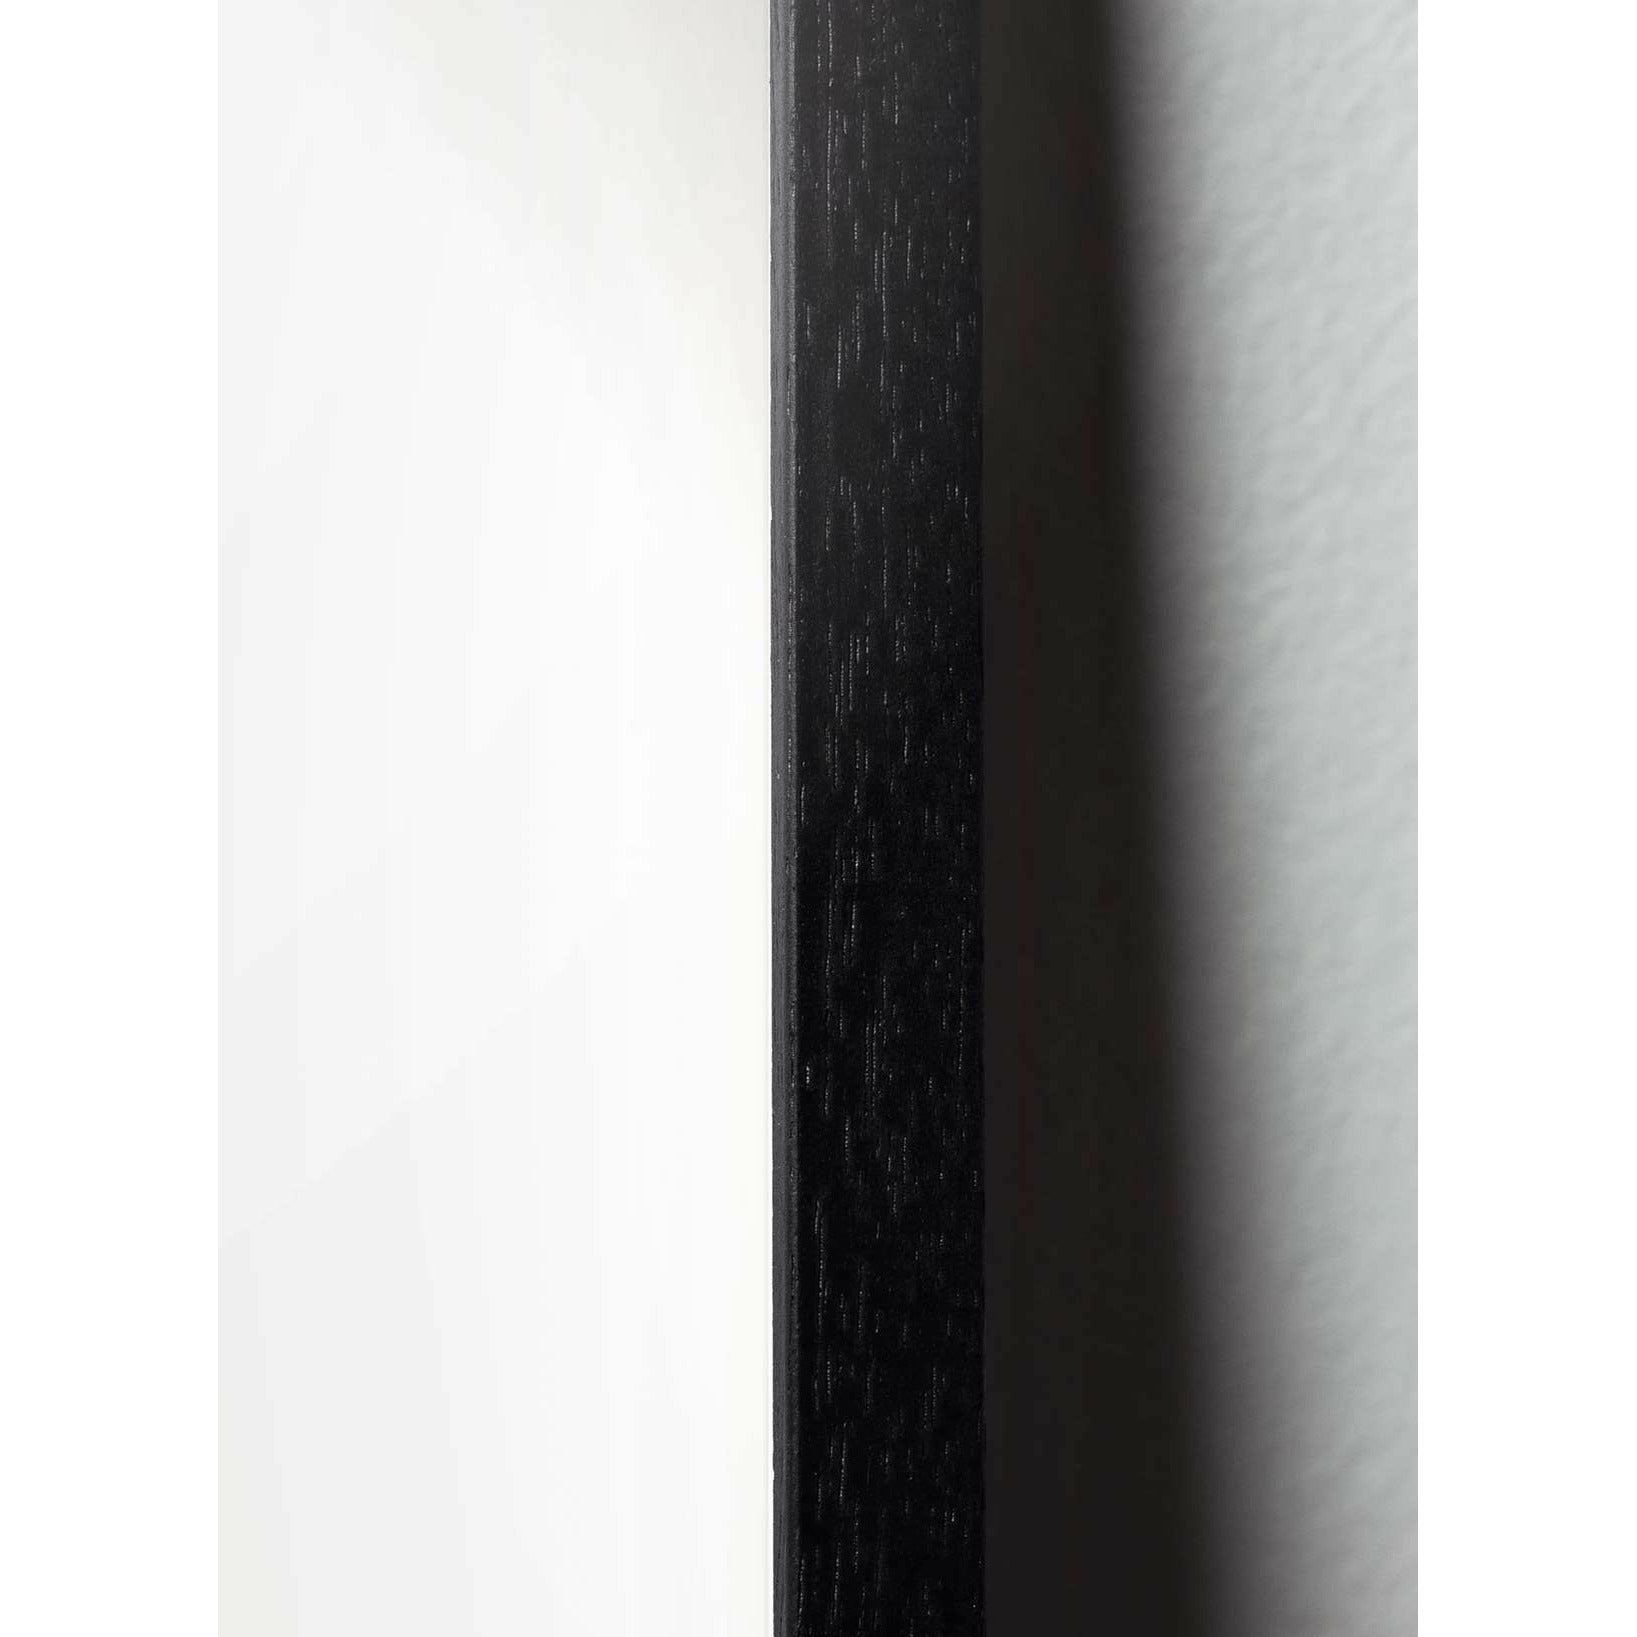 Brainchild Äggfigur Cross -Format -affisch, ram i svart -målat trä 50x70 cm, svart